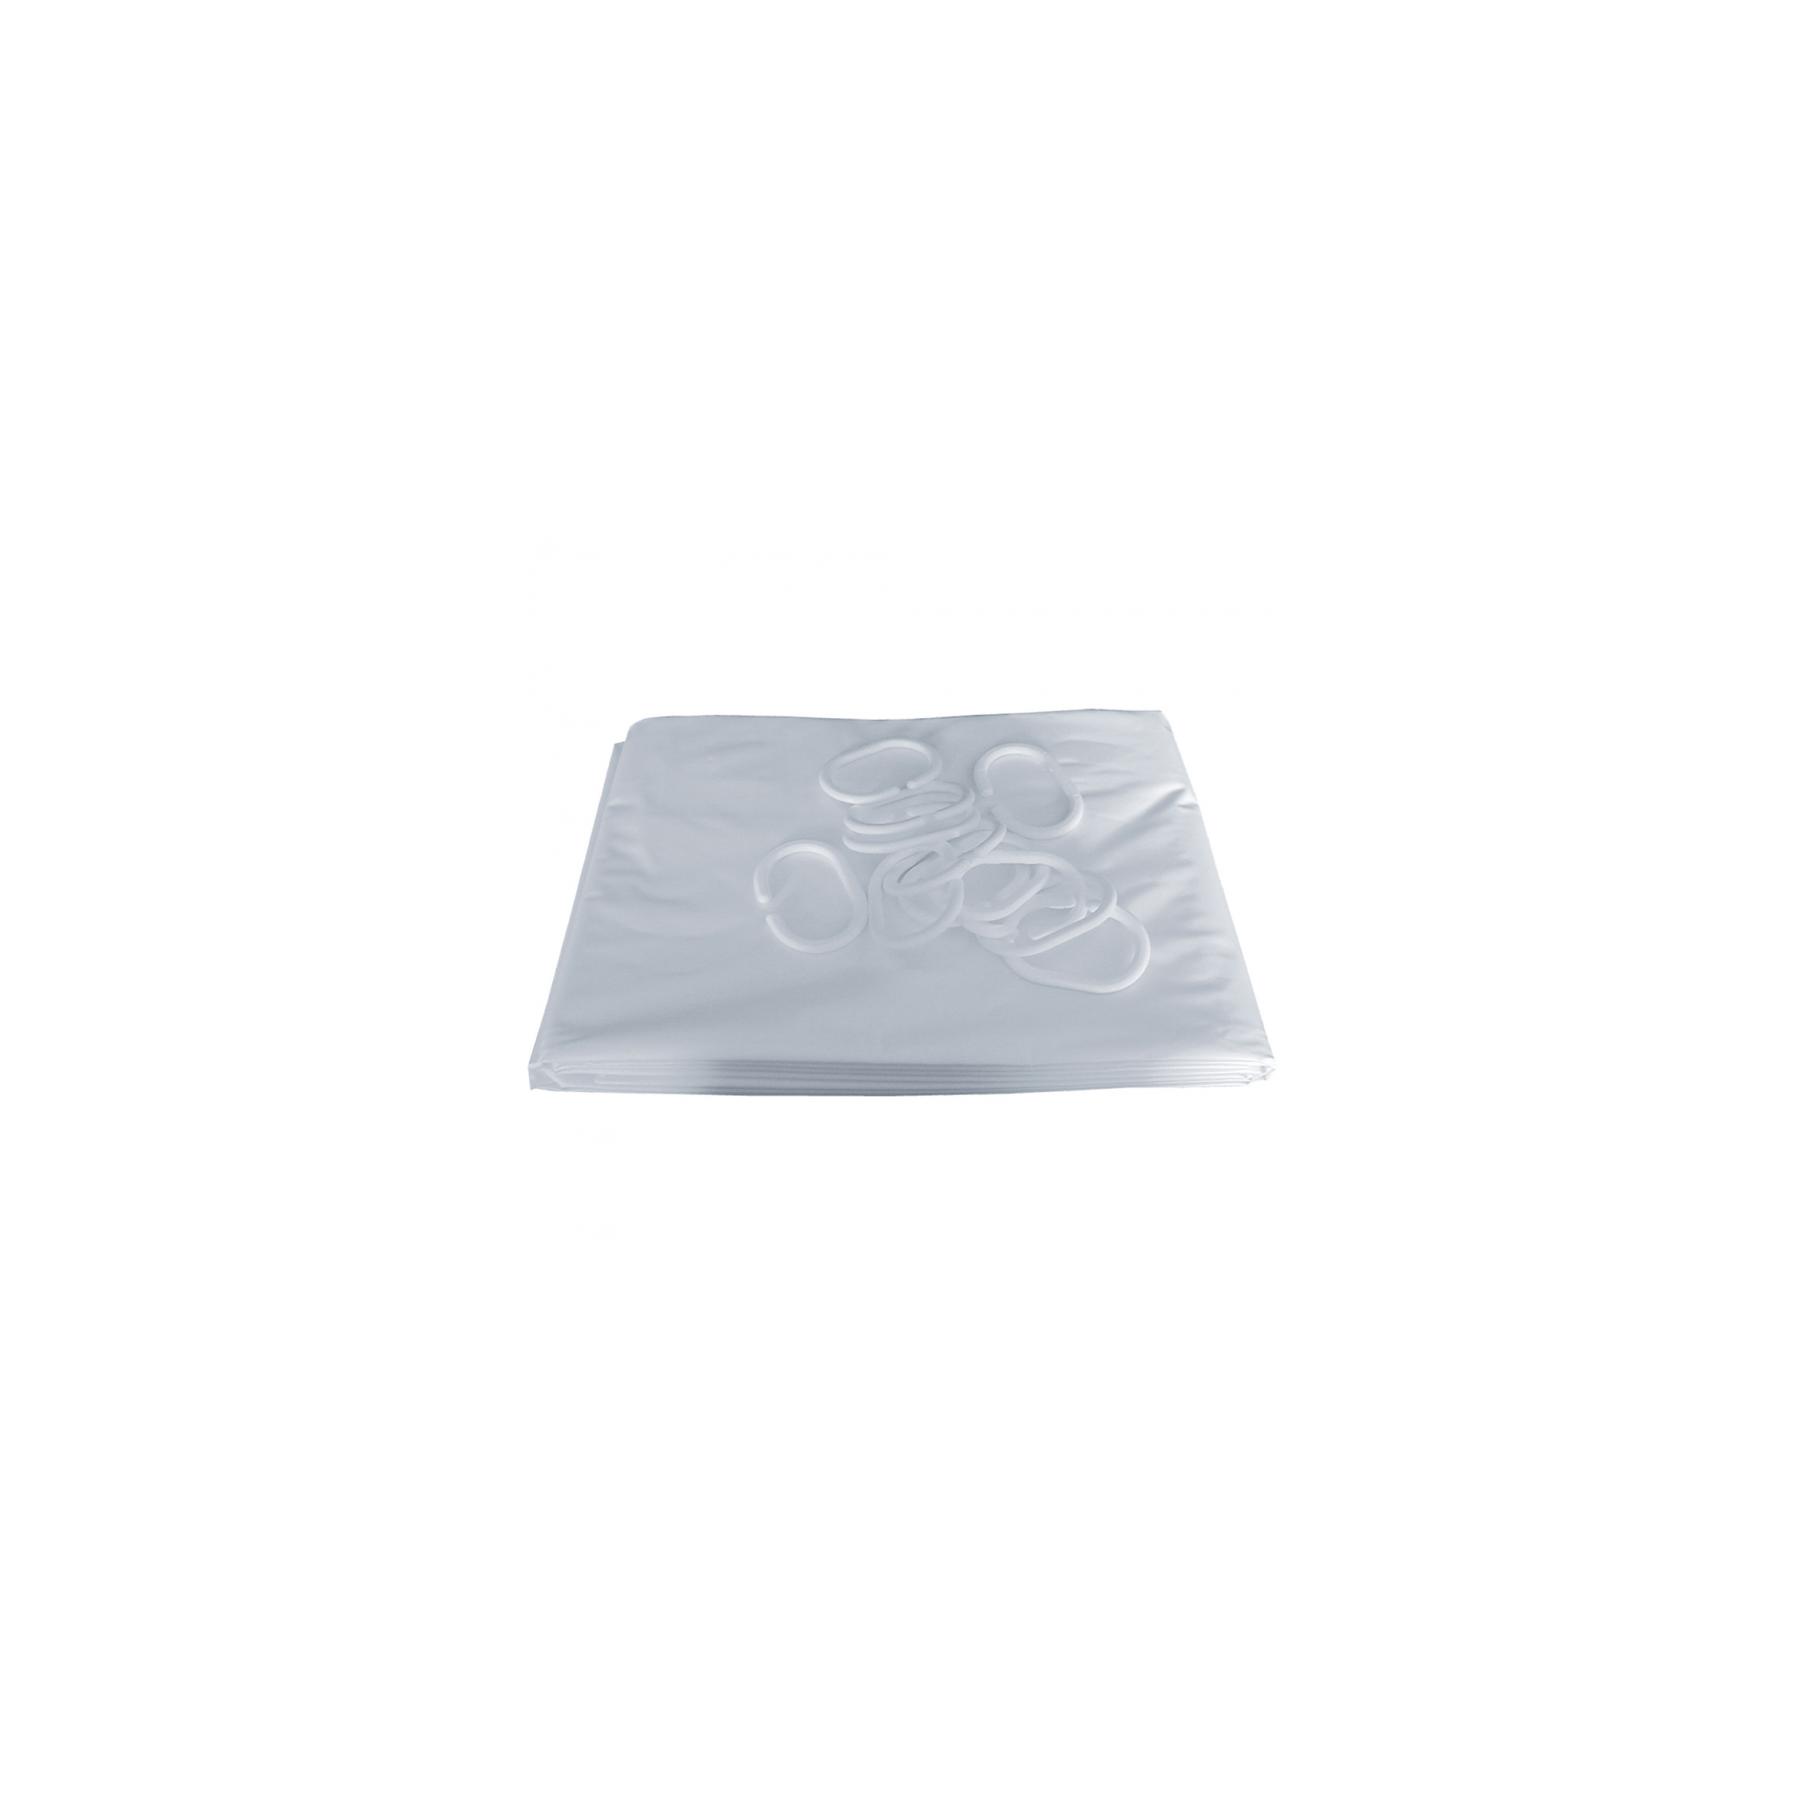 Rideau de douche Gamme PRO PELLET hauteur 2,00m largeur 1,80m 12 anneaux plastique blanc PVC blanc lisse coupé